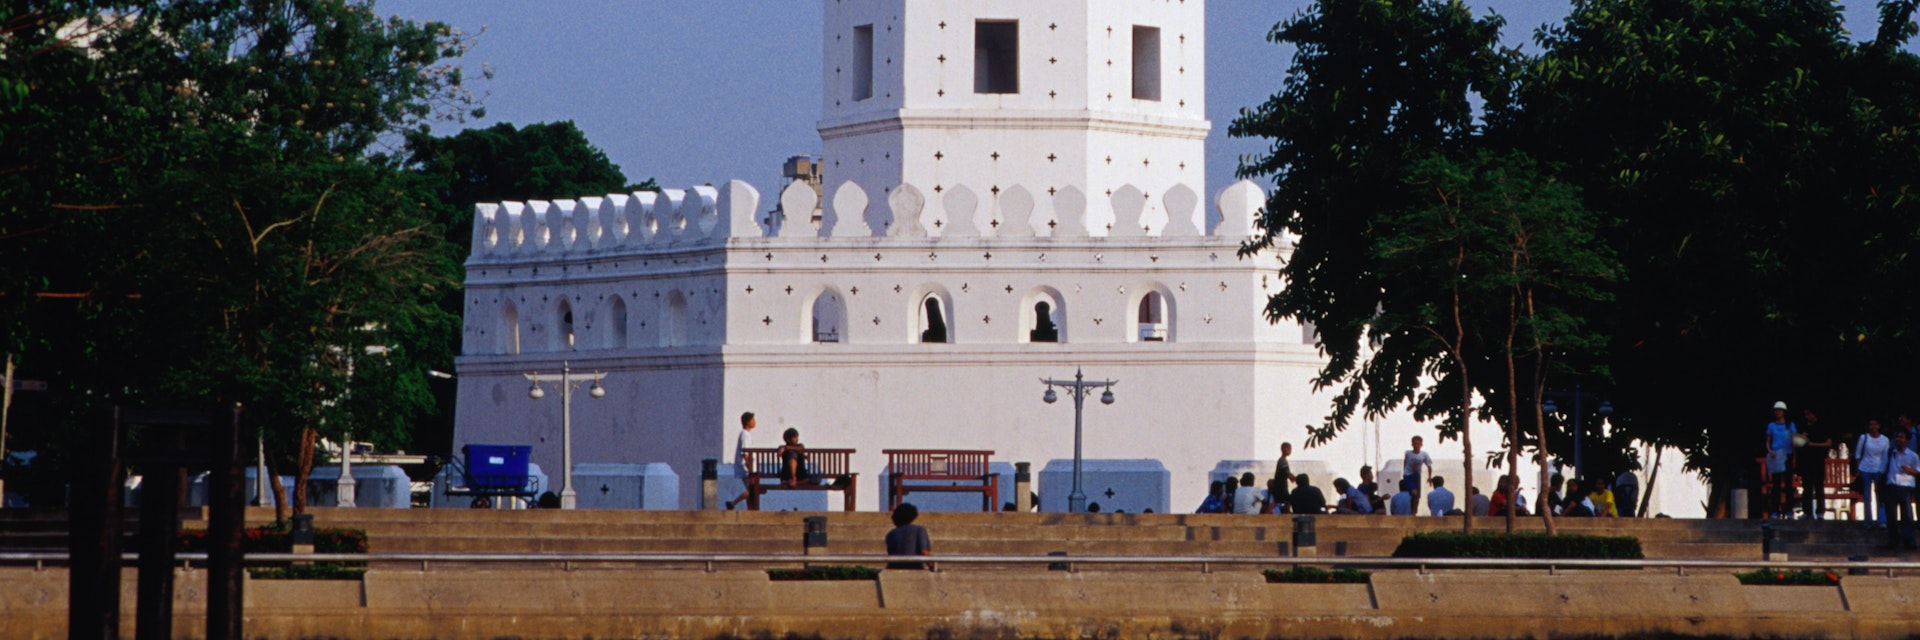 Phra Sumen Fort, Banglamphu.